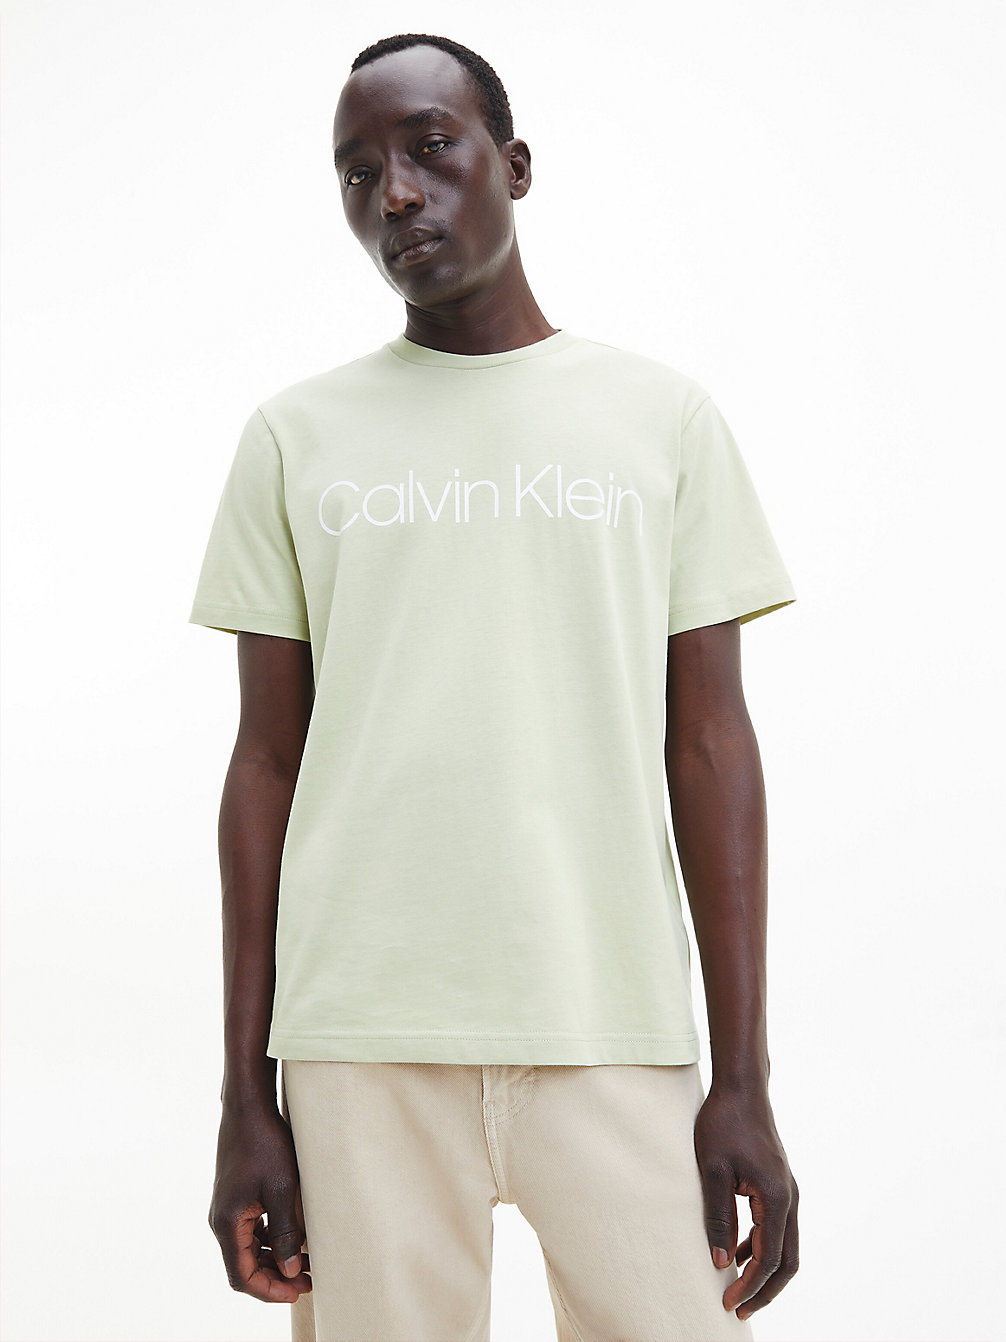 HERB TEA > Logo-T-Shirt Aus Bio-Baumwolle > undefined Herren - Calvin Klein